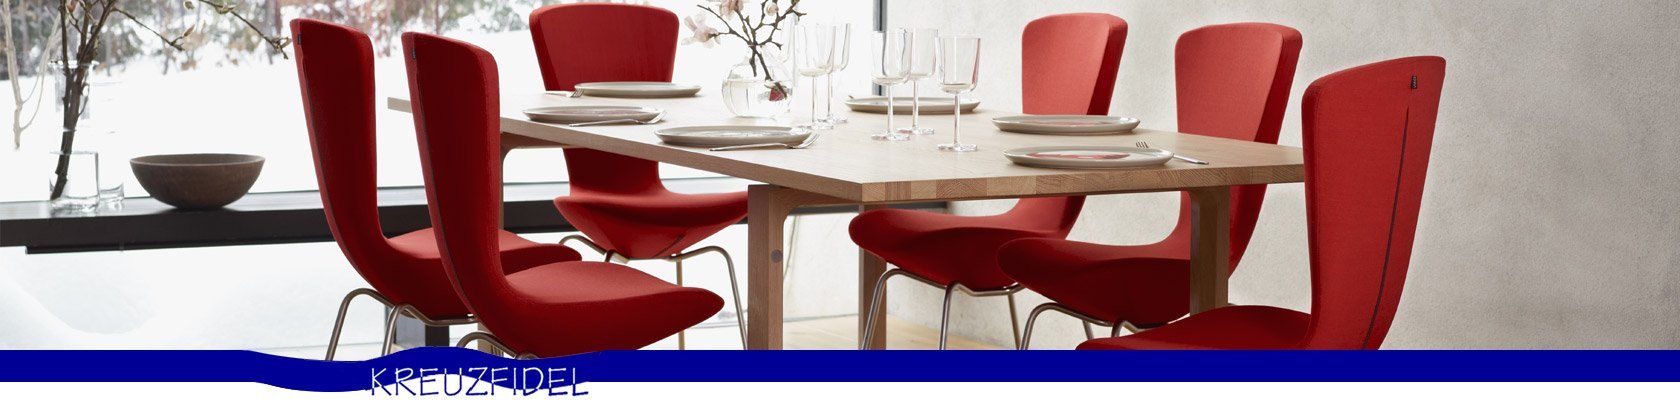 Headerbild von sechs roten Stühlen um einen eckigen Esstisch